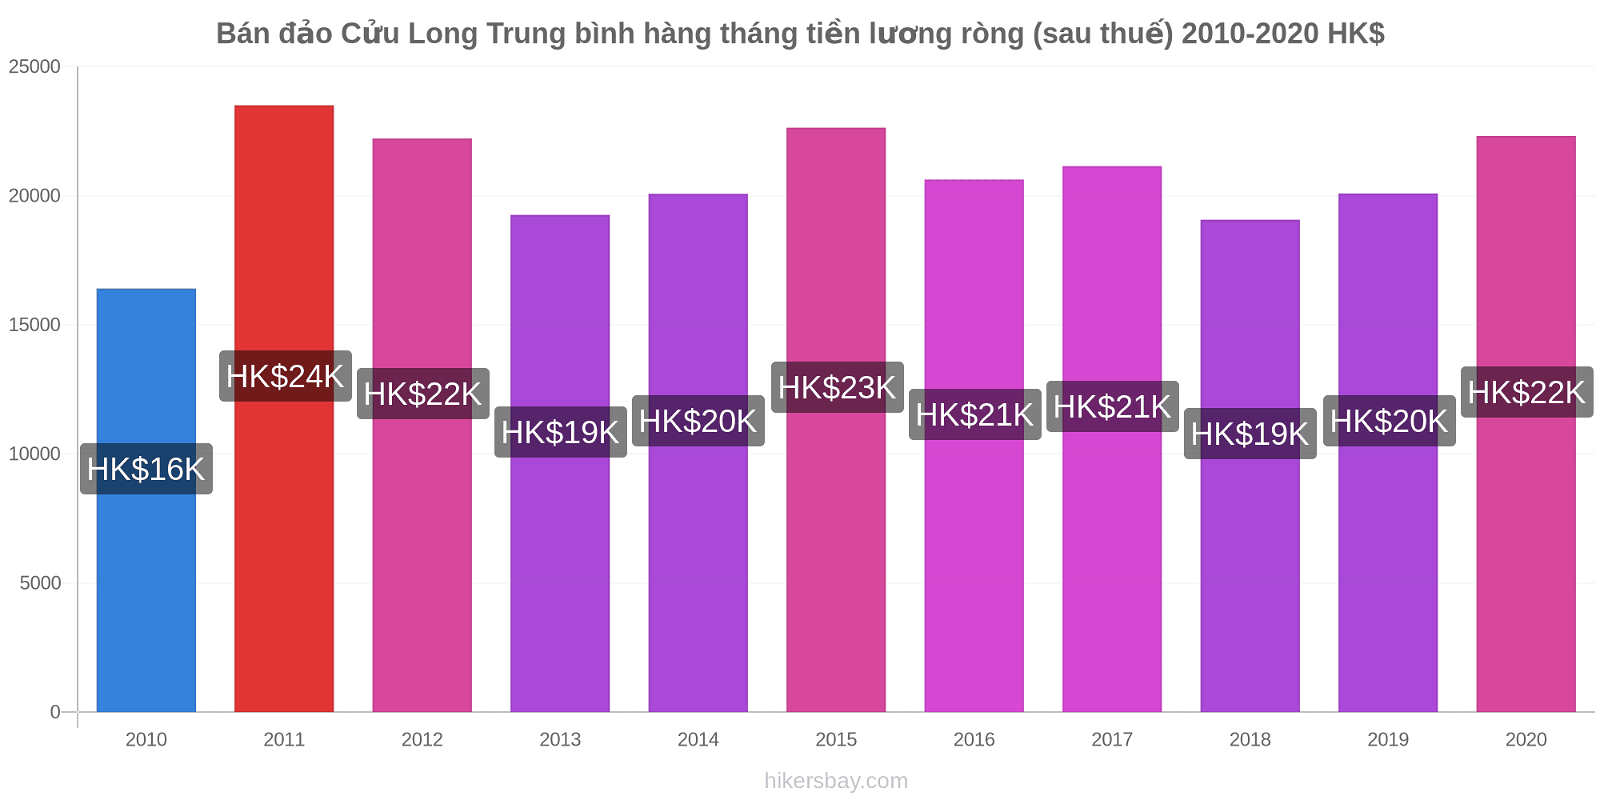 Bán đảo Cửu Long thay đổi giá Trung bình hàng tháng tiền lương ròng (sau thuế) hikersbay.com